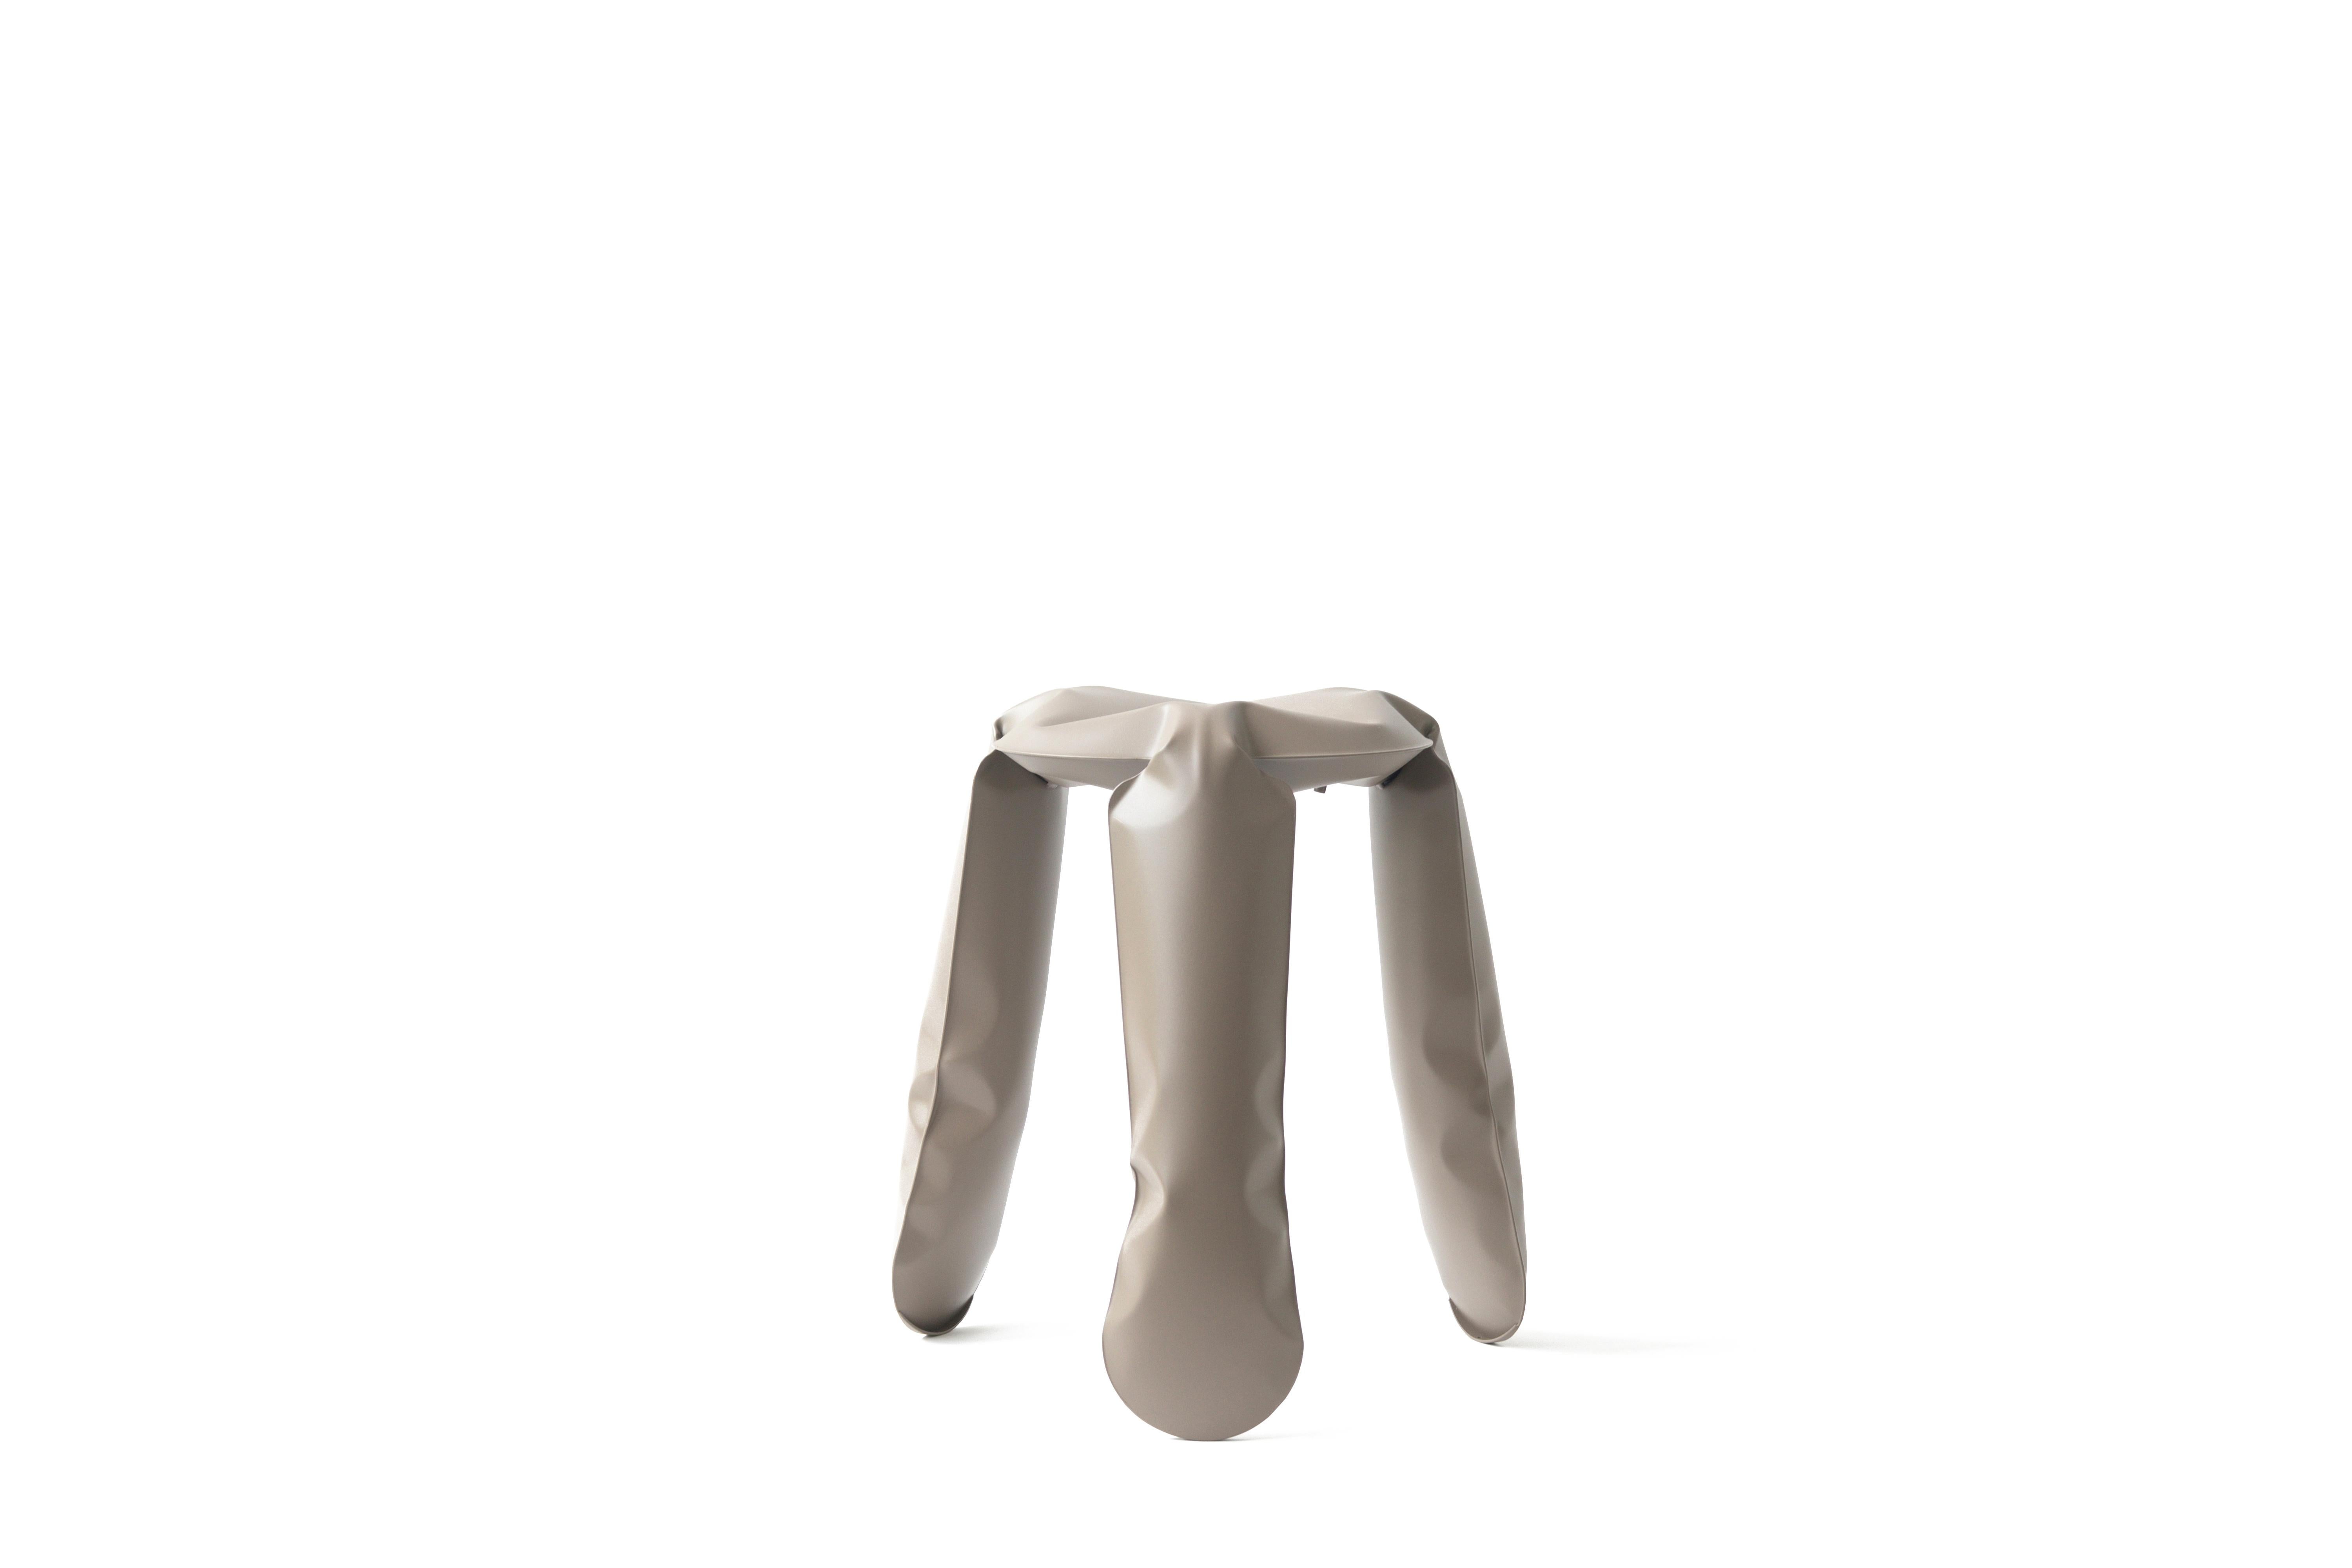 Tabouret Standard Plopp en aluminium gris beige par Zieta
Dimensions : D 35 x H 50 cm 
MATERIAL : Aluminium. 
Finition : Revêtement en poudre. 
Disponible en couleurs : Graphite, gris mousse, gris umbra, gris beige, gris bleu. Disponibles en acier